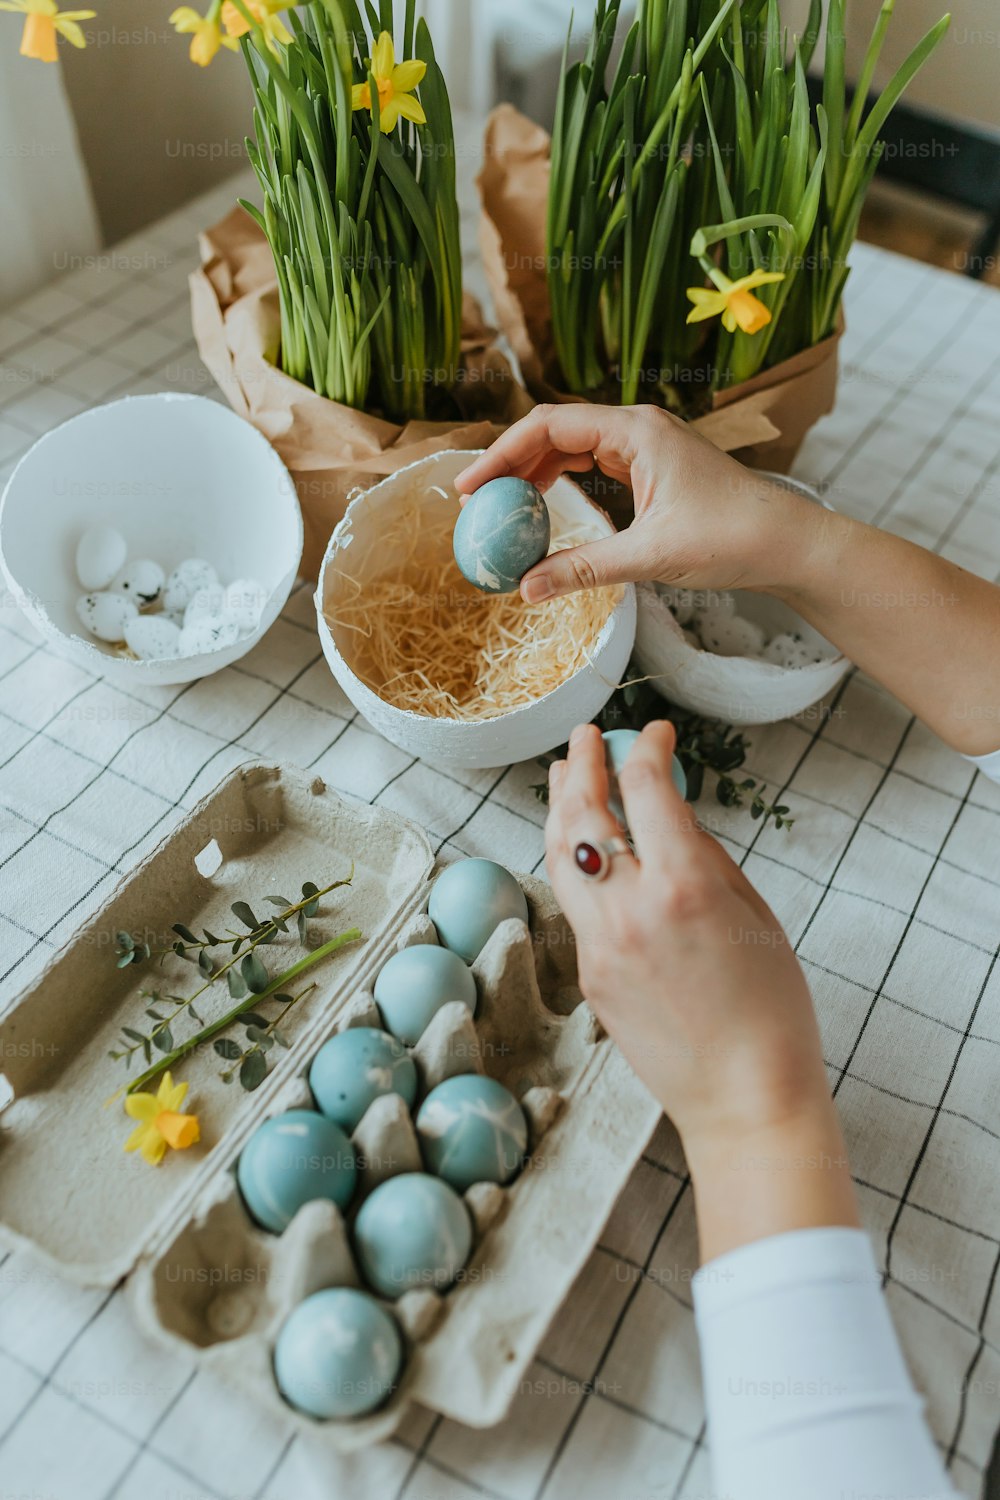 Una persona está decorando unos huevos en una mesa